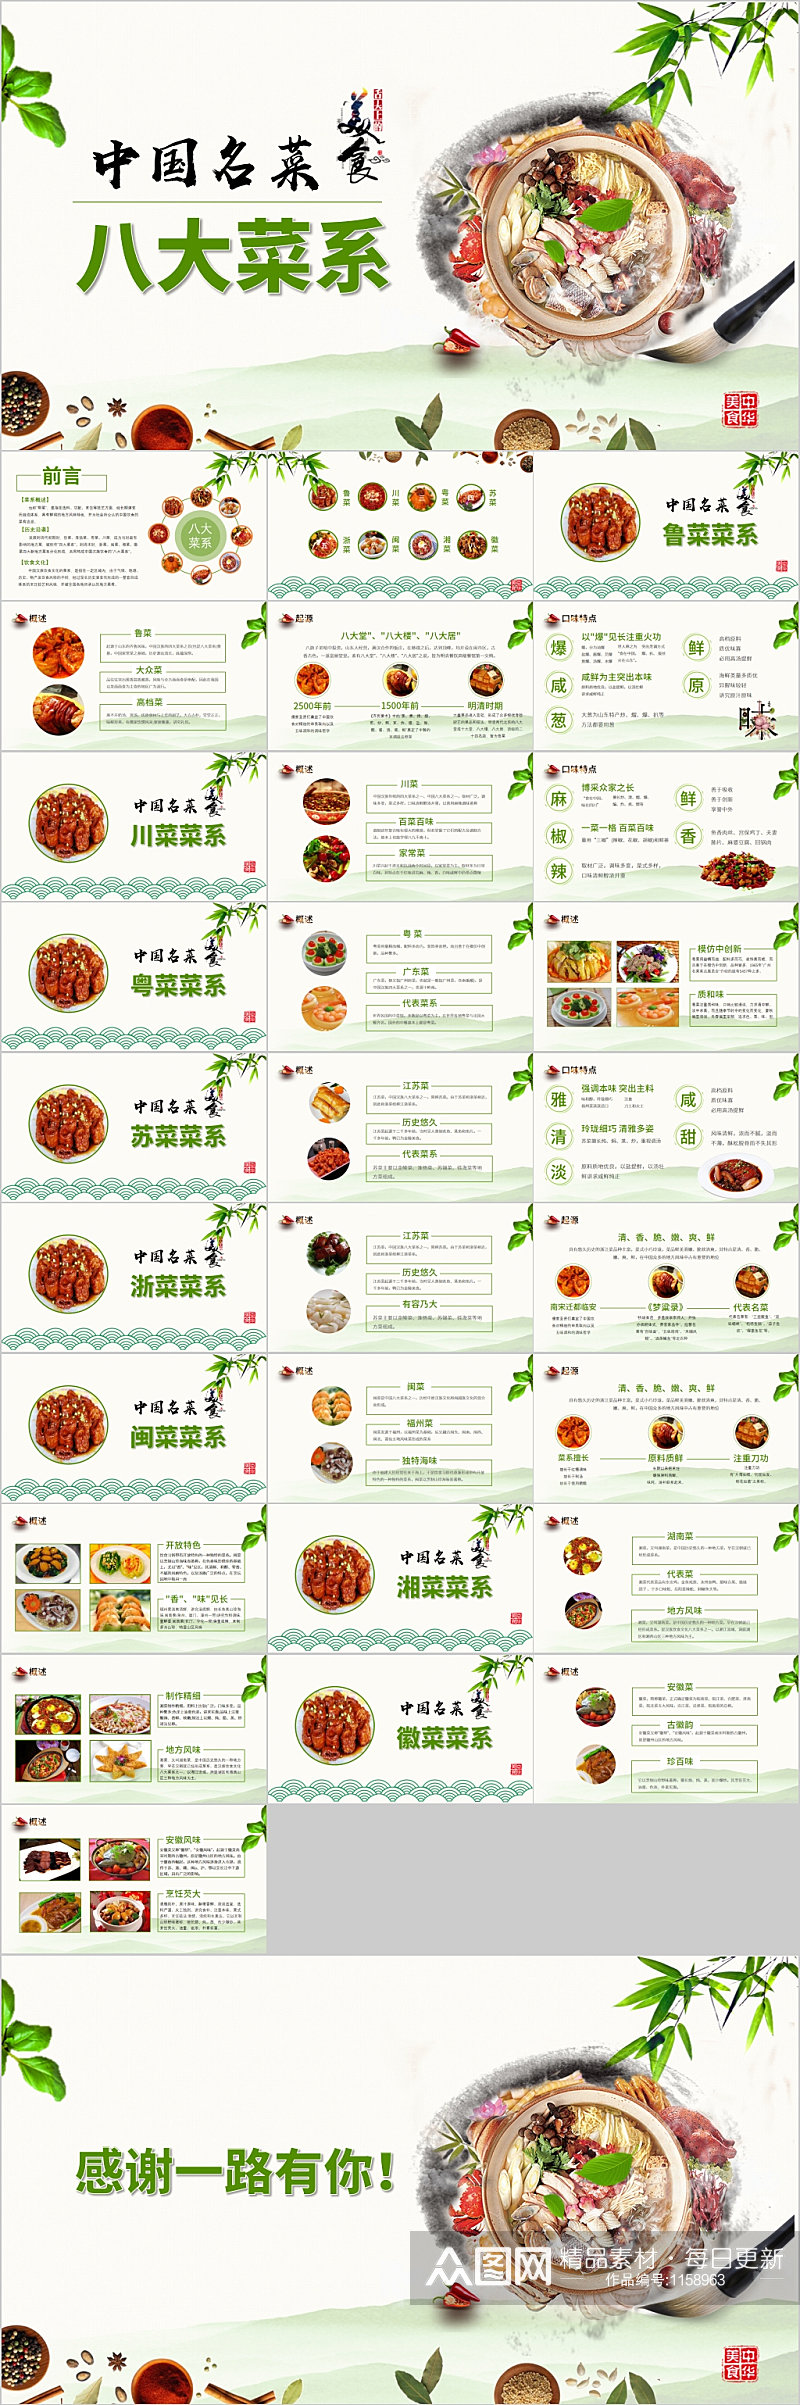 中国名菜八大菜系美食PPT素材